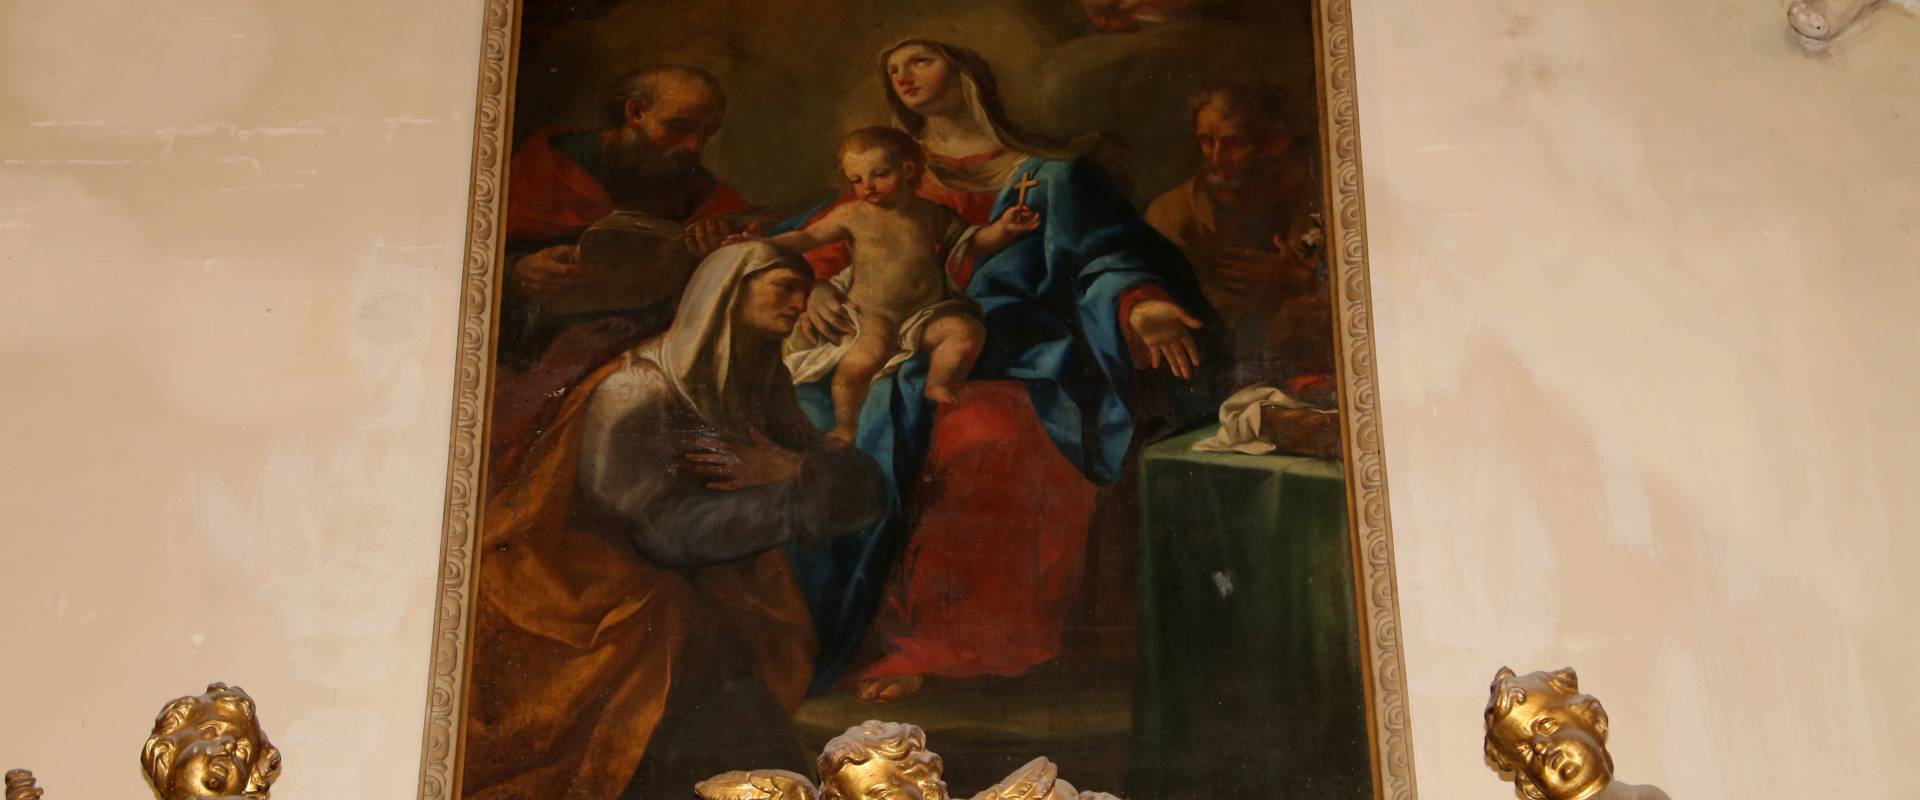 Forlì, san mercuriale, interno, cappella del ss. sacramento, sacra famiglia coi santi gioacchino e anna photo by Sailko